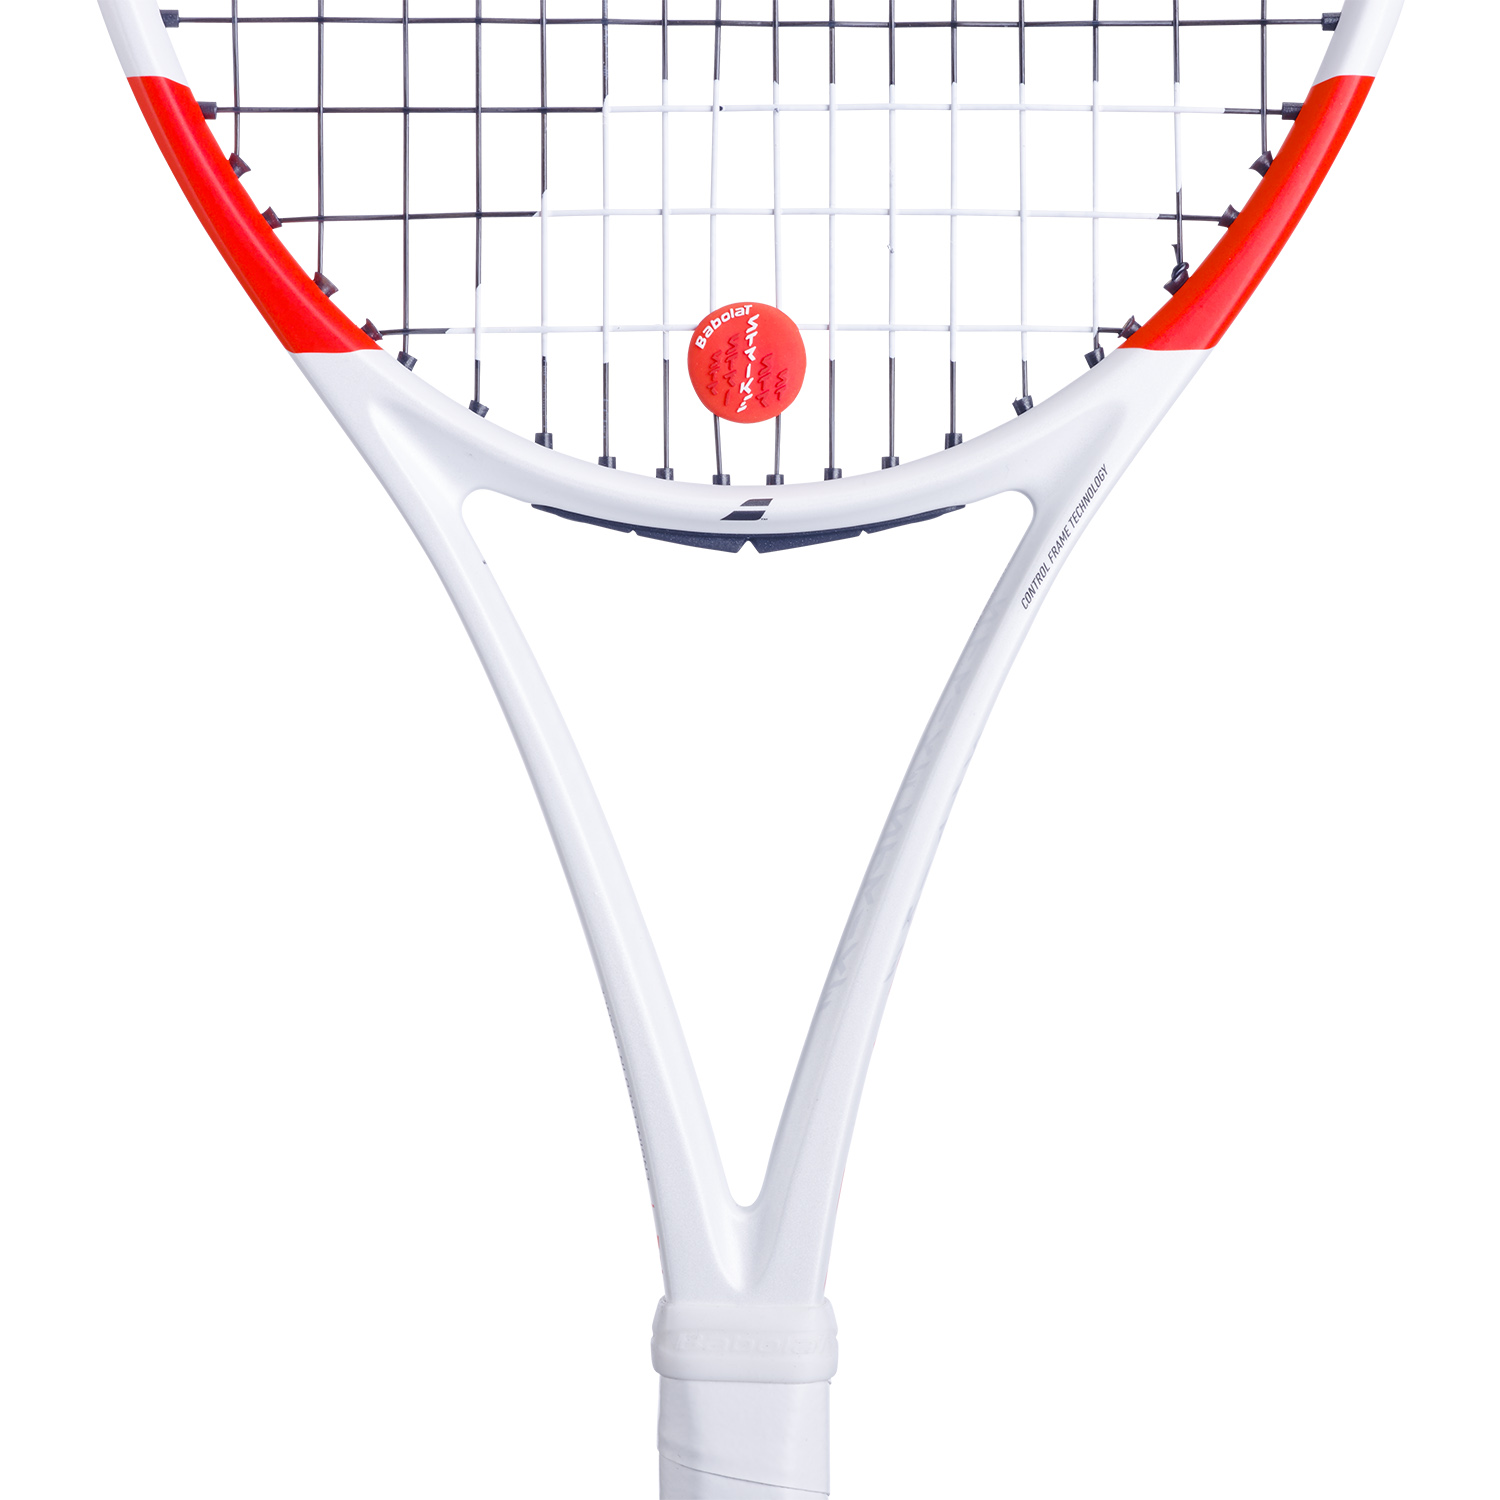 Babolat Strike x 2 Antivibrazioni Racchetta da Tennis - White/Red